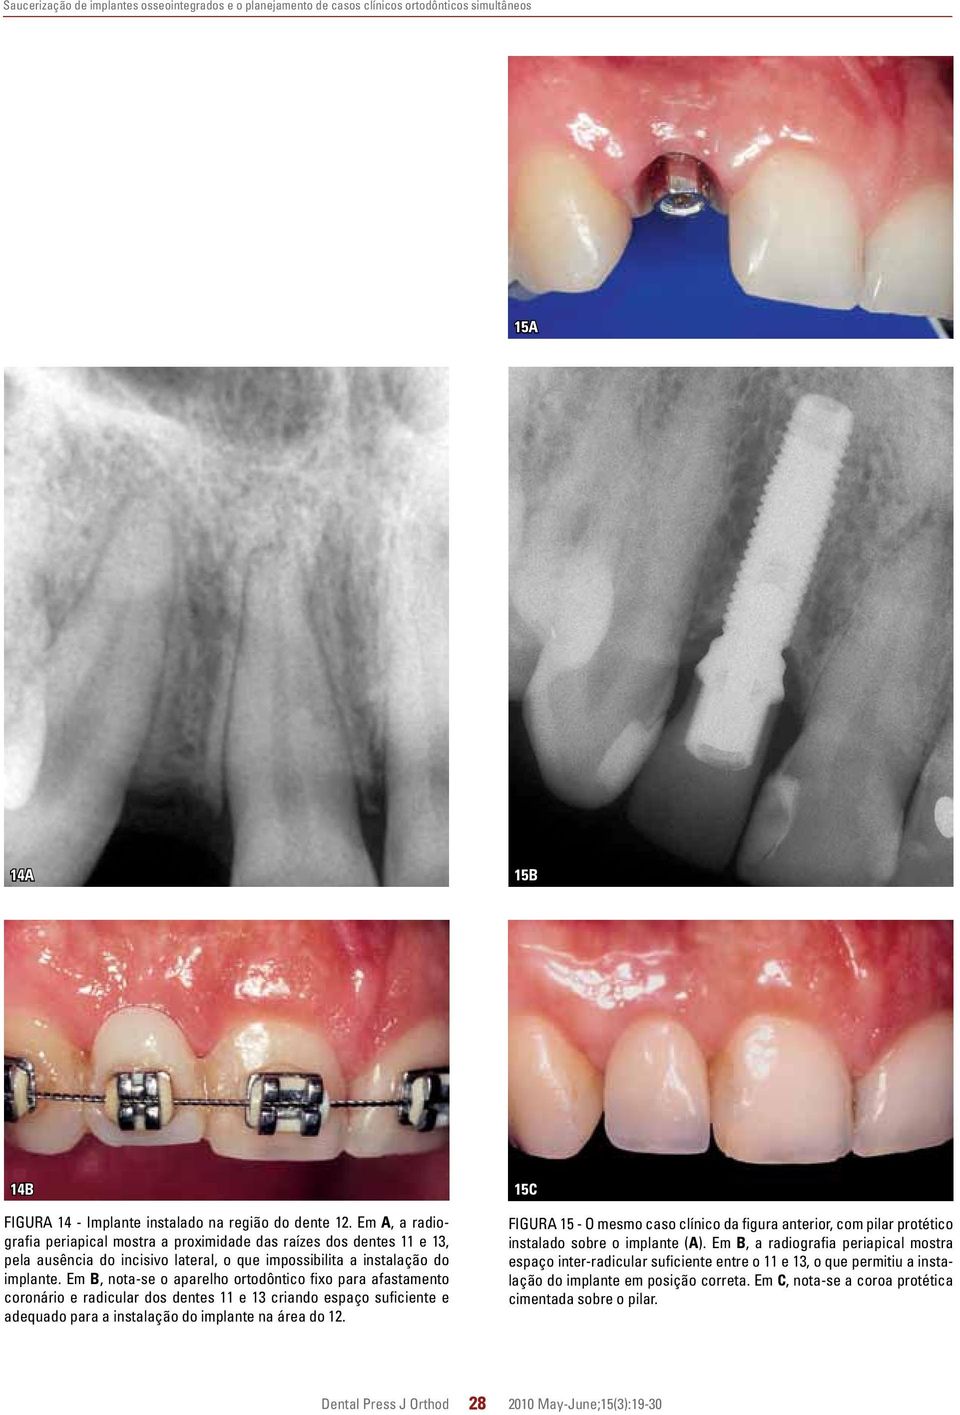 Em B, nota-se o aparelho ortodôntico fixo para afastamento coronário e radicular dos dentes 11 e 13 criando espaço suficiente e adequado para a instalação do na área do 12.